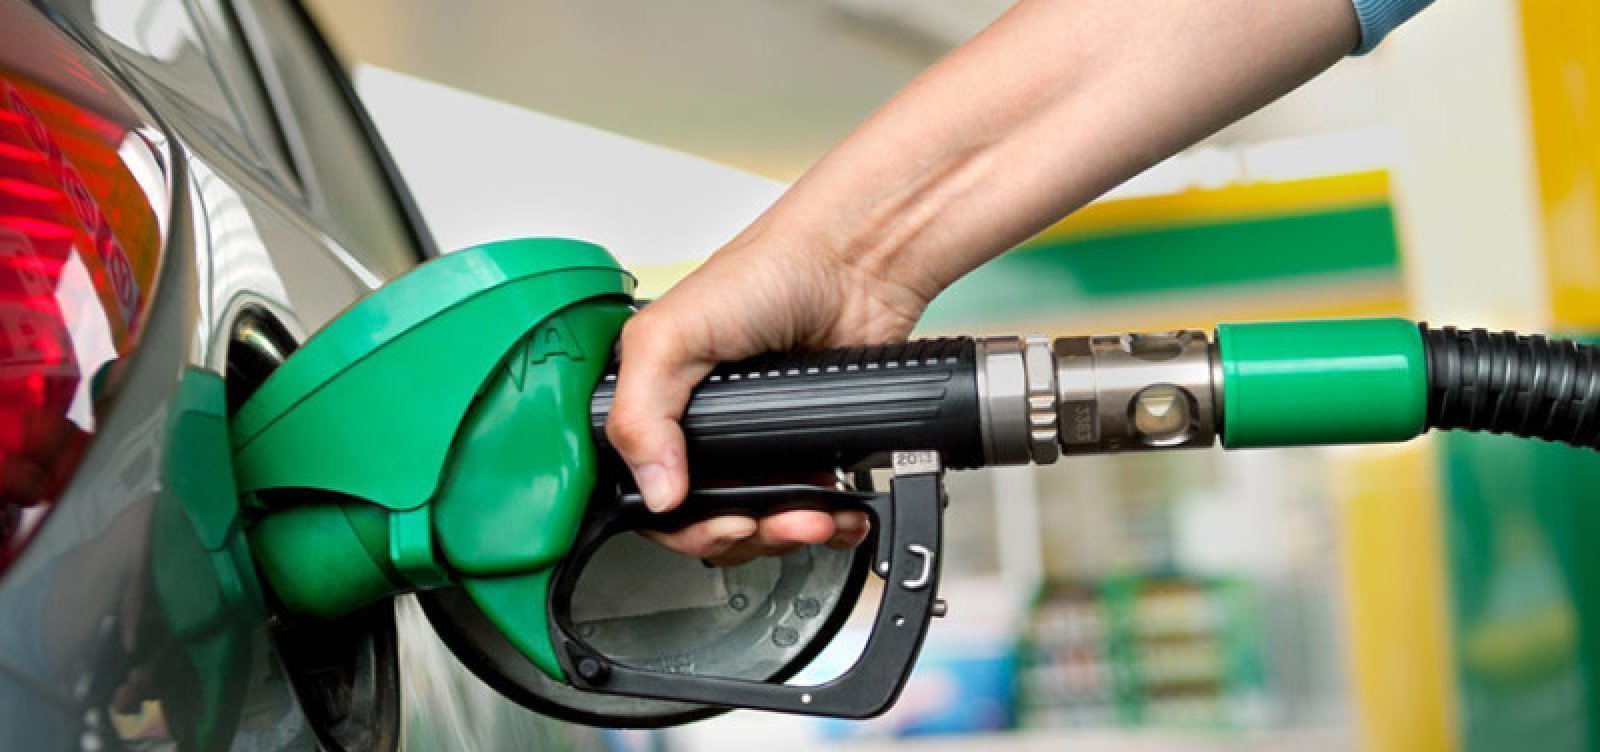 Preço da gasolina nos postos chega a R$ 8,99 e o do diesel a R$ 8,63, aponta ANP